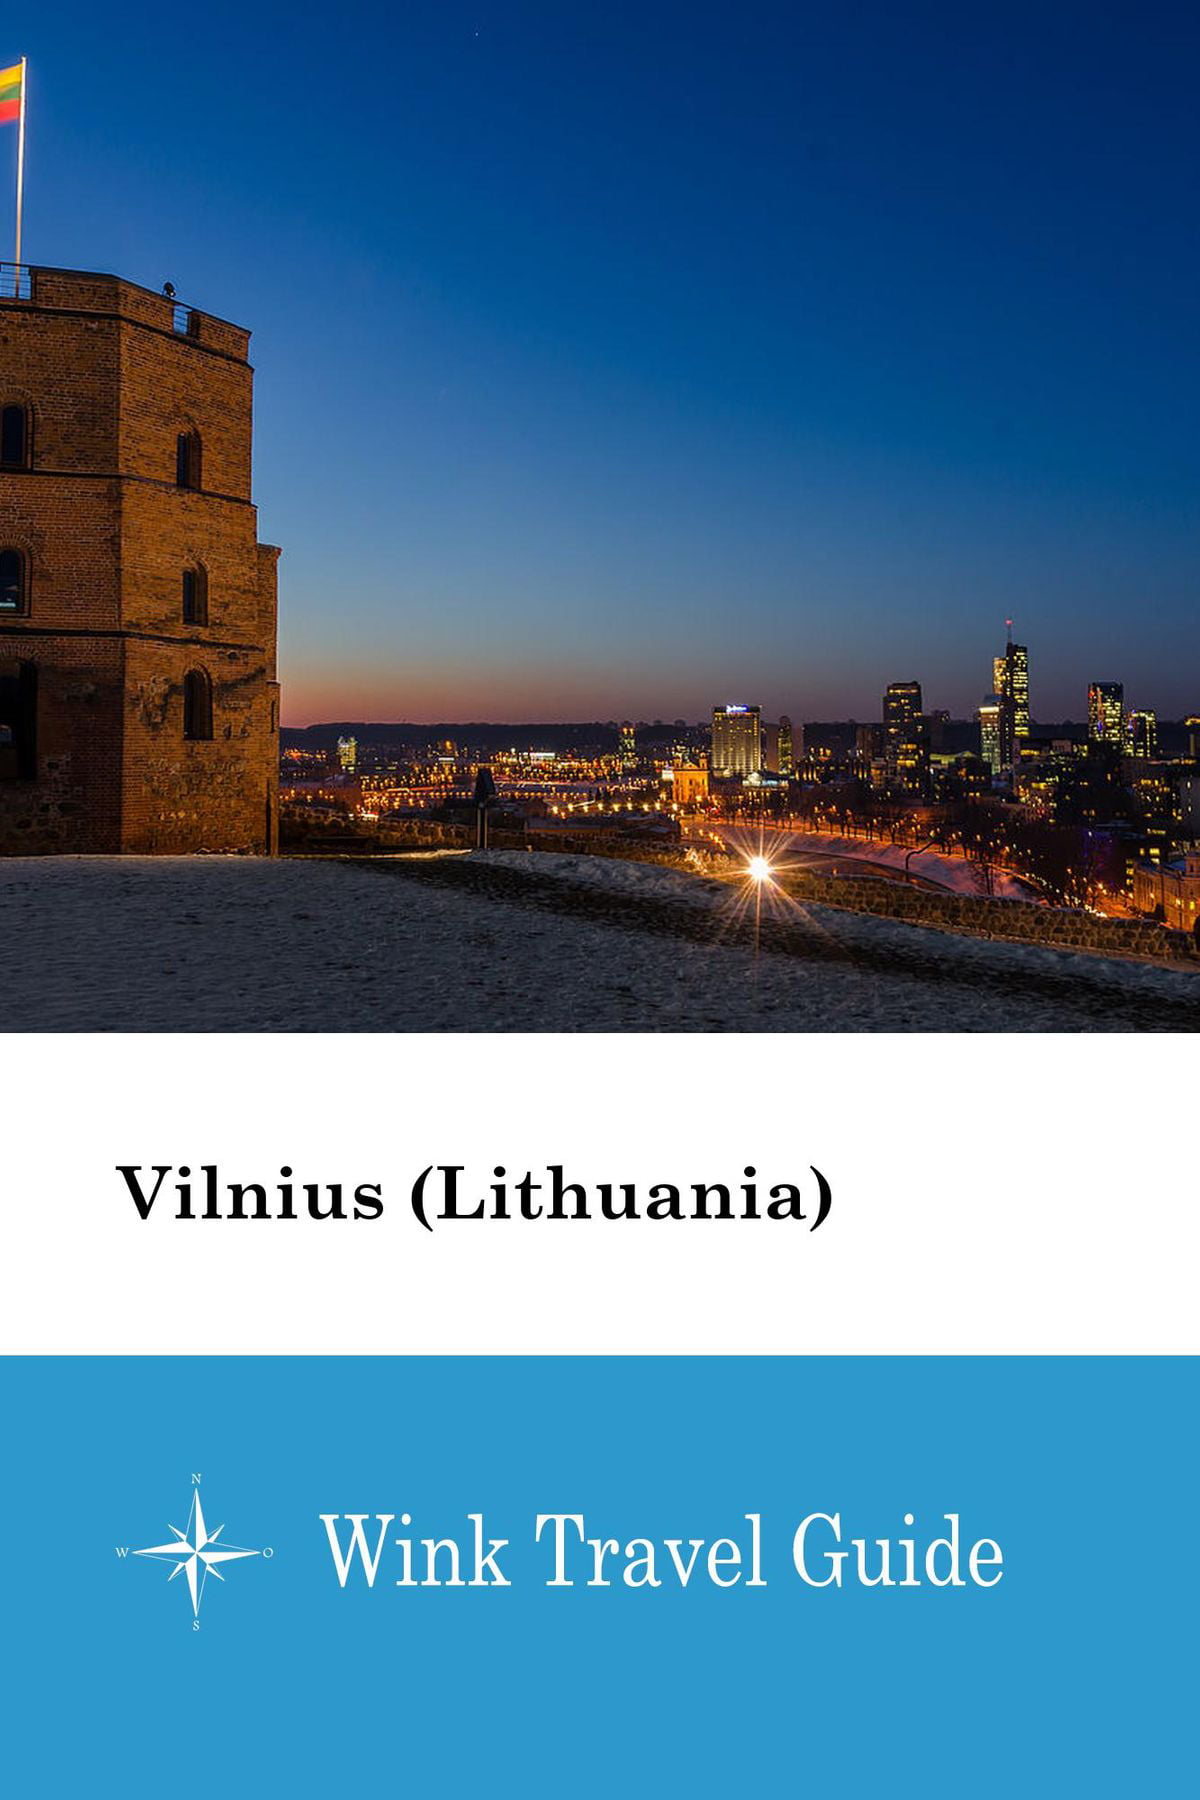 Vilnius (Lithuania) - eBook - Walmart.com - Walmart.com